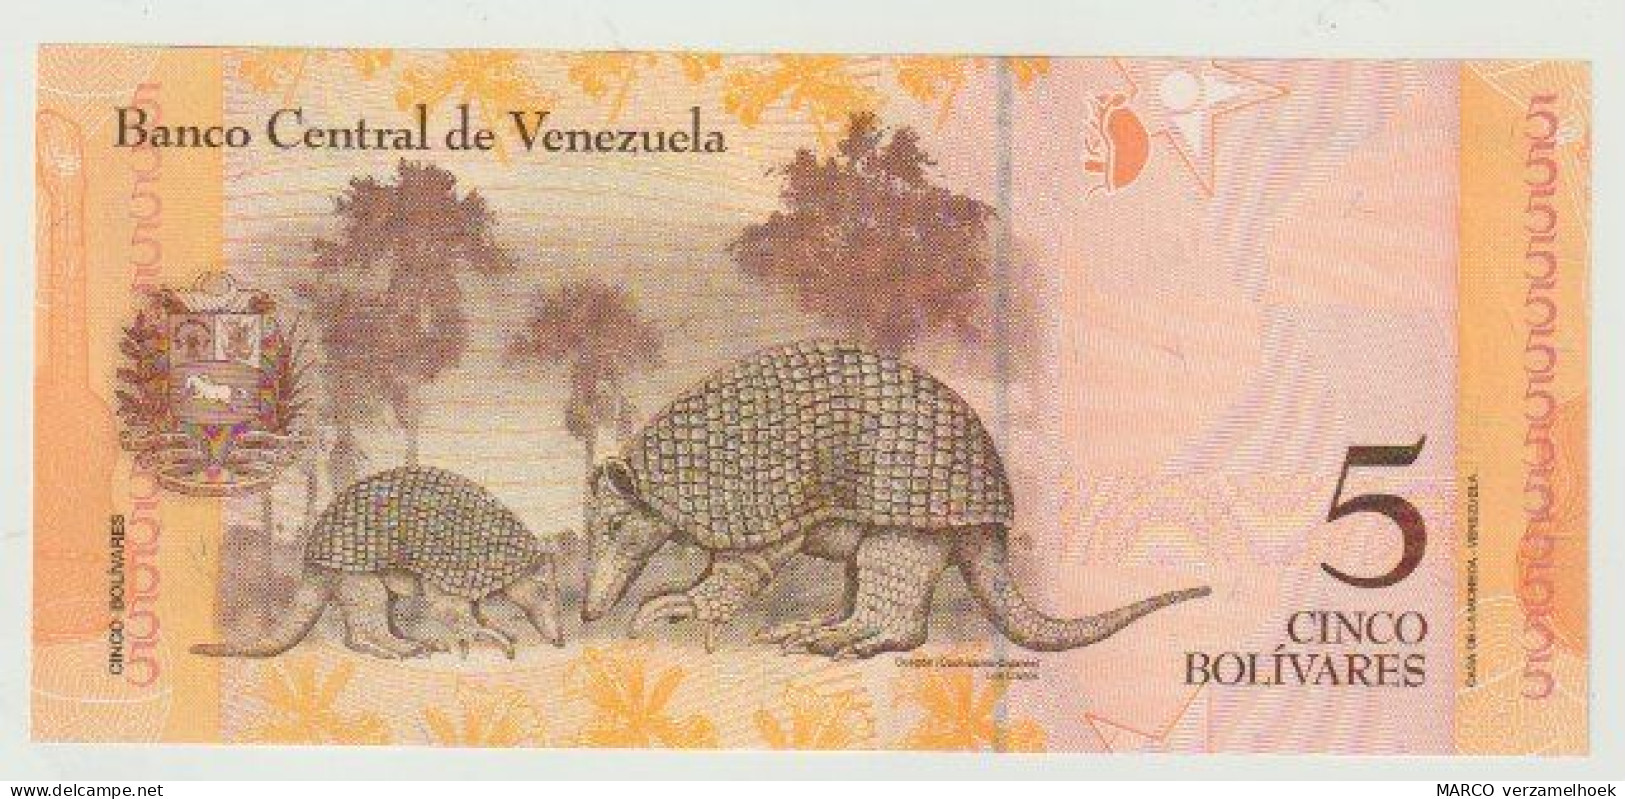 Banknote Banco Central De Venezuela 5 Bolivares 2011 UNC - Venezuela